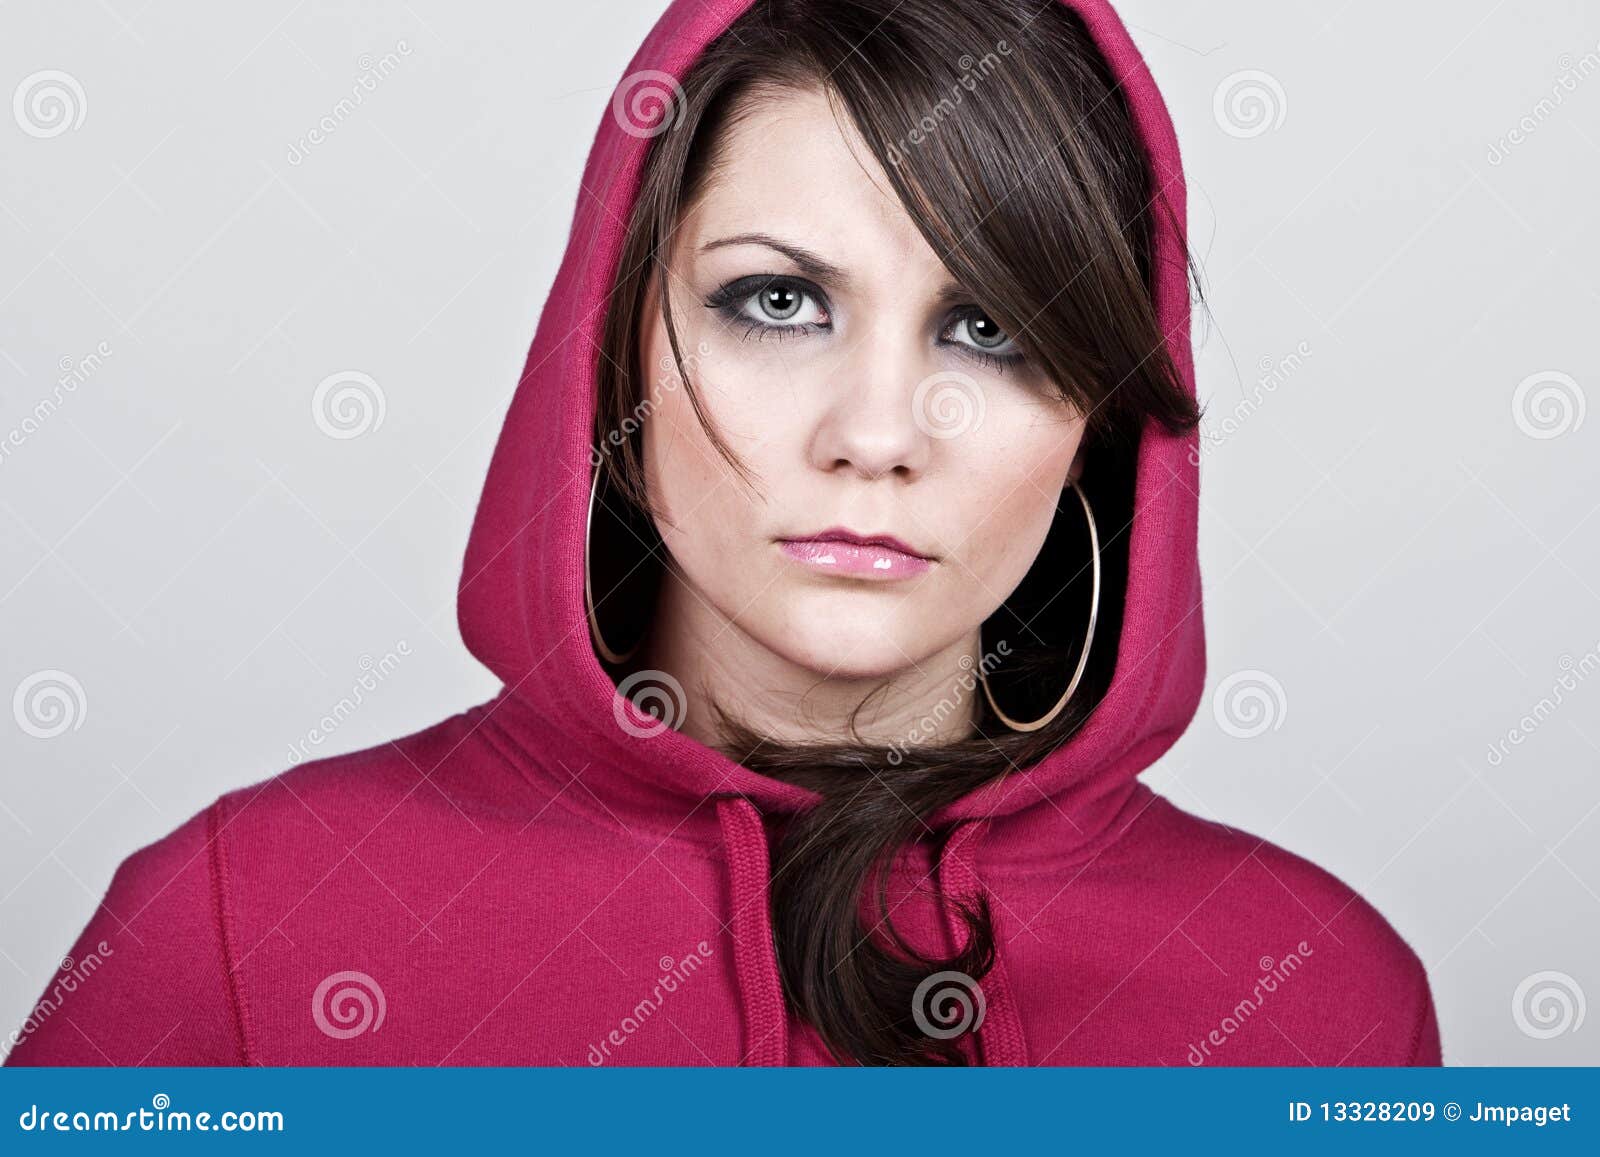 female hoodie against grey background